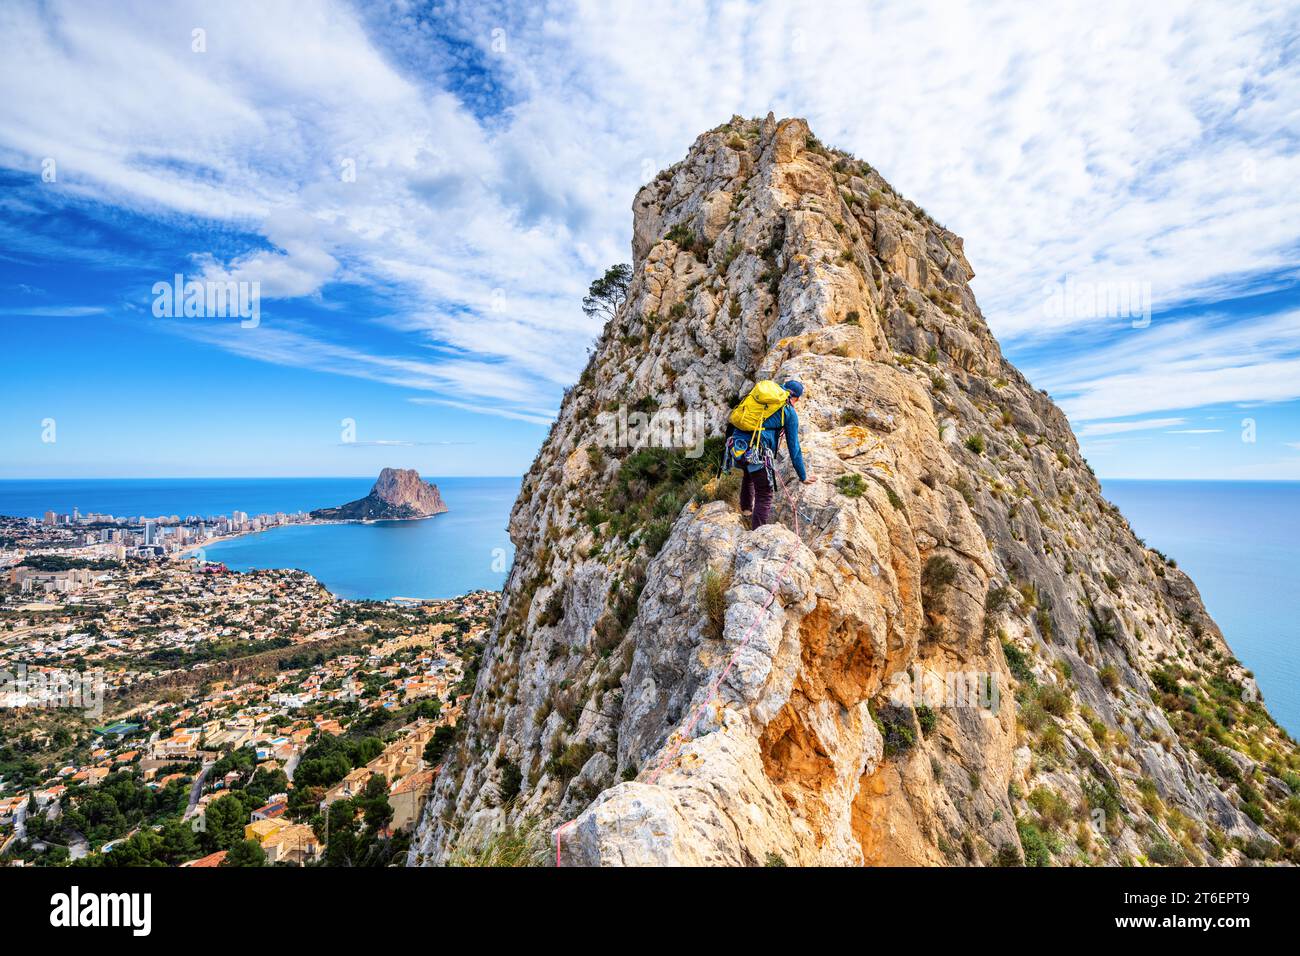 Rock climbing on a ridge in Calp, Alicante, Spain Stock Photo